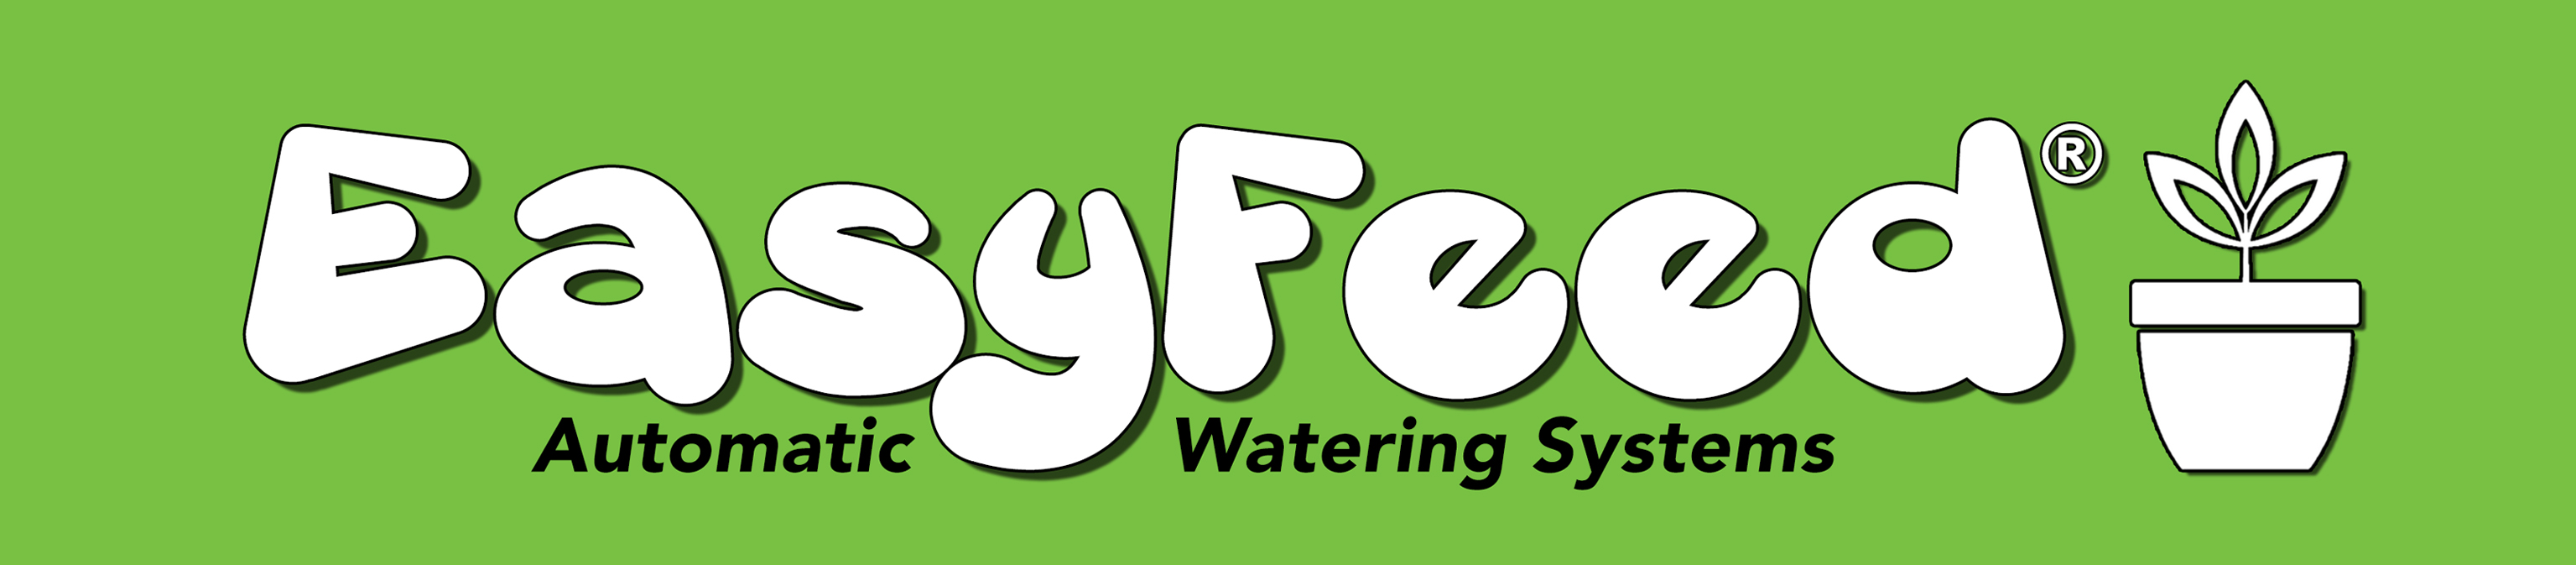 easyfeed logo